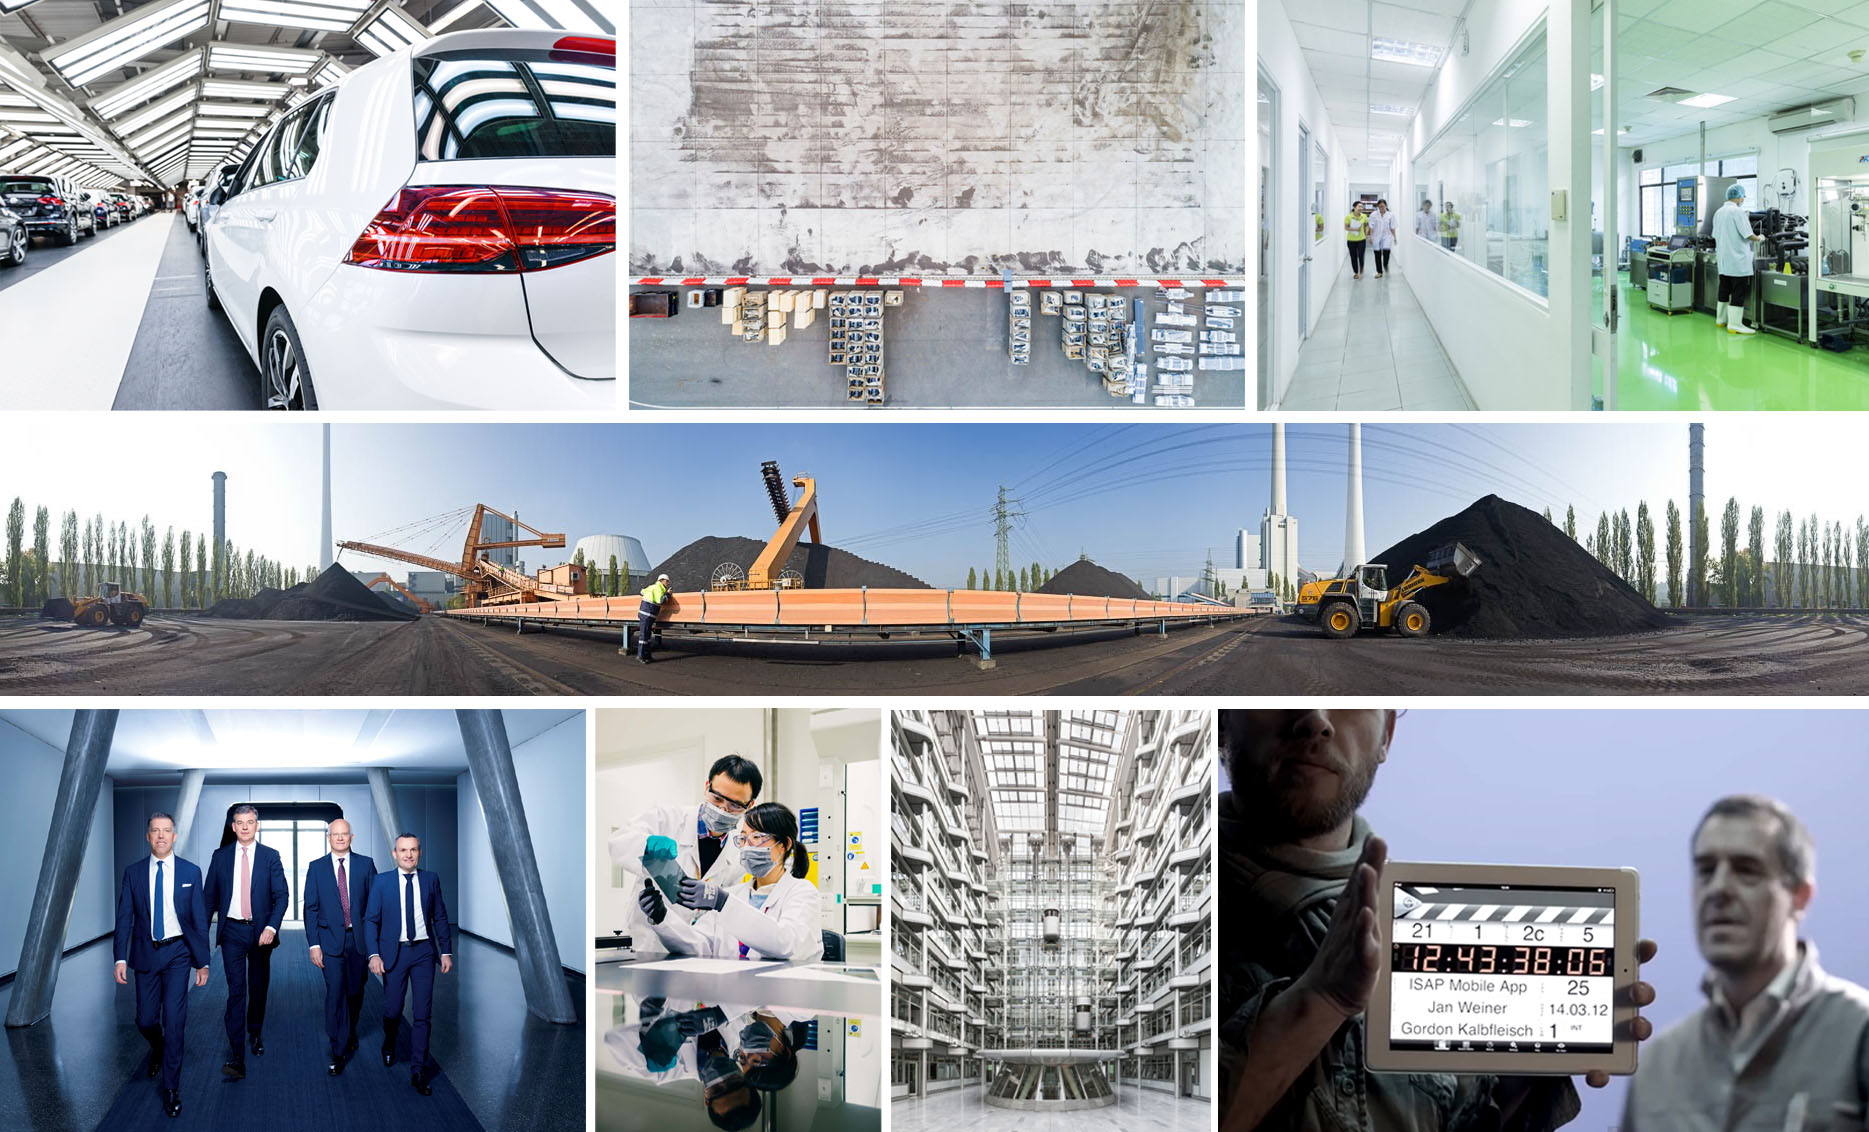 EXPOSE Corporate Foto + Video: individuell für Unternehmensdarstellungen. Industriefotografie, Airshots, Architektur, Business Portraits, Unternehmensdarstellung und auch Videoproduktion